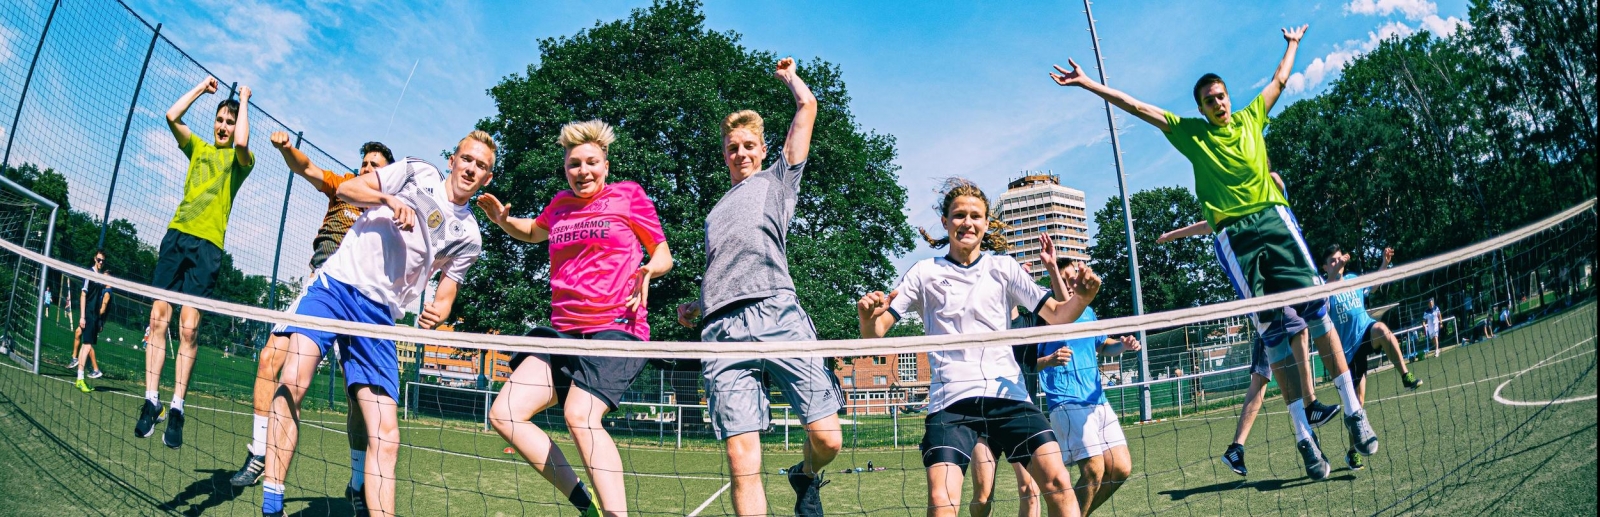 Viele Jungs in Sportkleidung springen vor einem Tennisnetz in die Höhe.